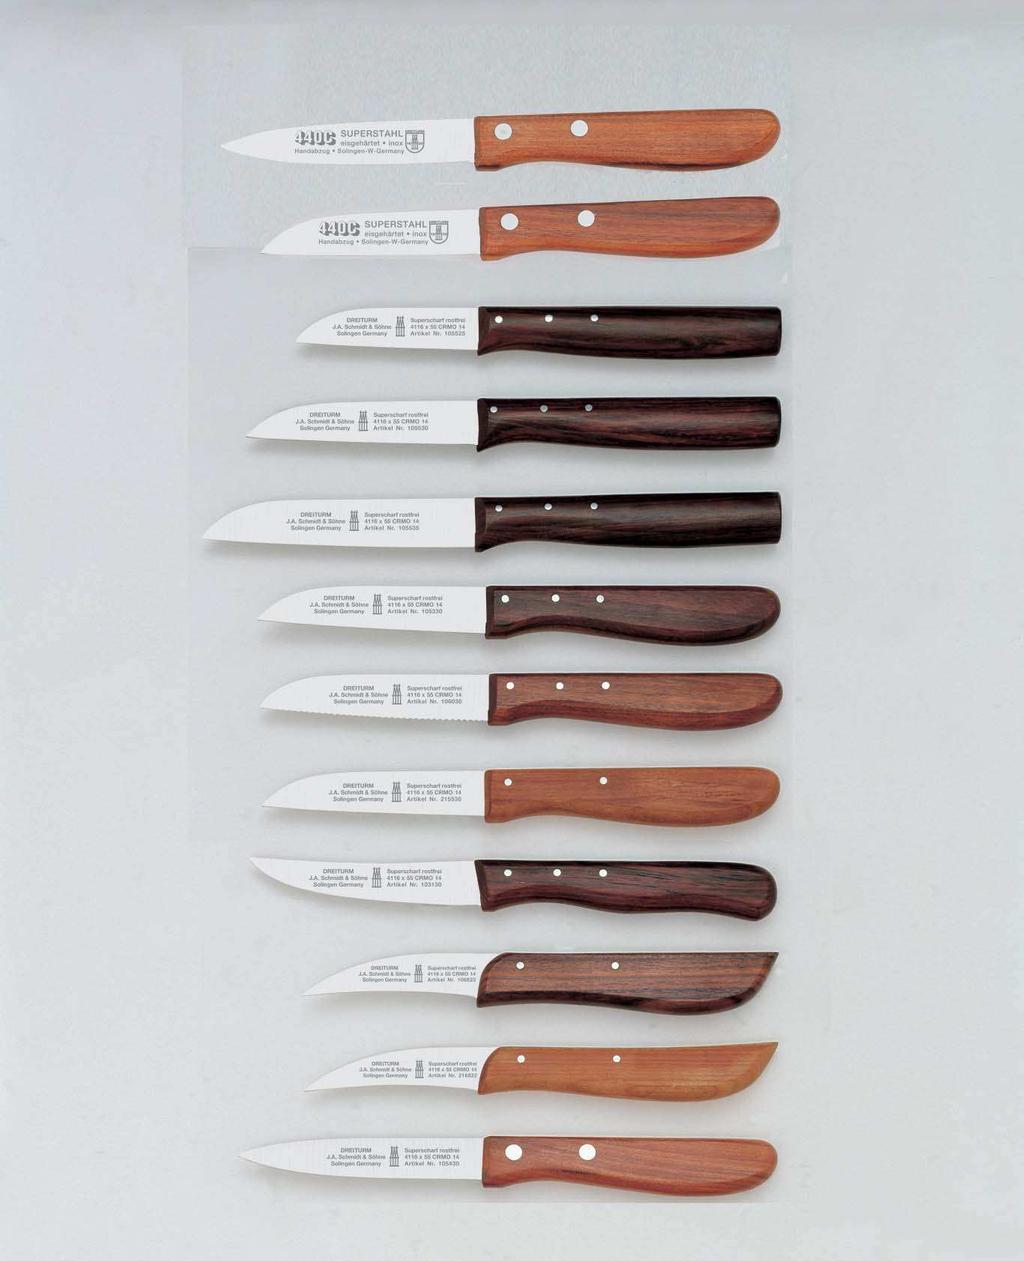 Küchenmesser mit Holzgriff Couteaux de cuisine manche bois Paring knives wooden handle Cuchillos para cocina mango de madera 10 44 32 3 1/4 = 8,3 cm 10 44 30 3 = 8 cm 10 55 25 2 1/2 =